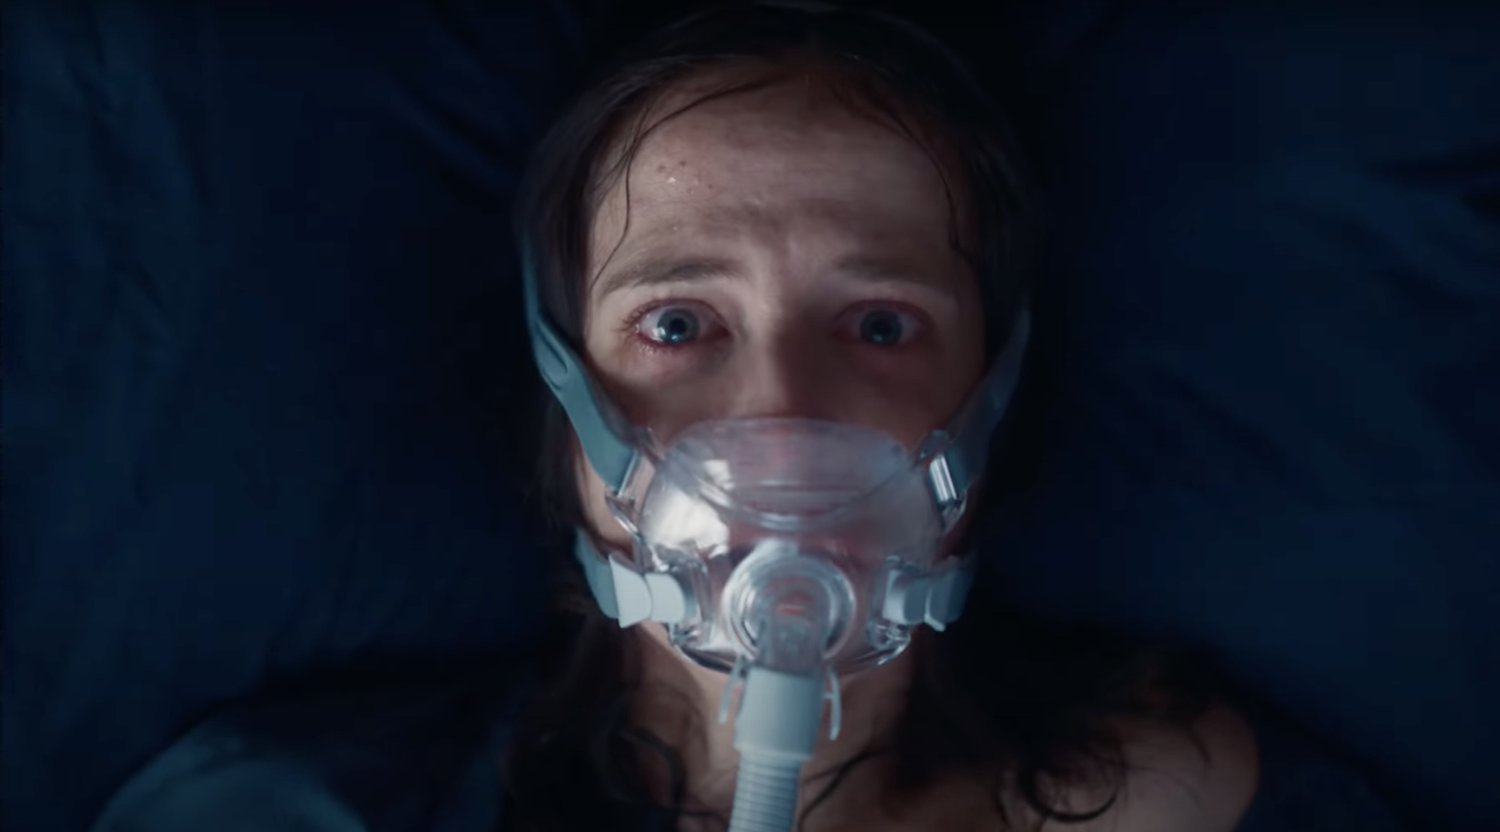 Bande-annonce inquiétante pour le thriller d’horreur psychologique troublant NOCEBO avec Eva Green et Mark Strong